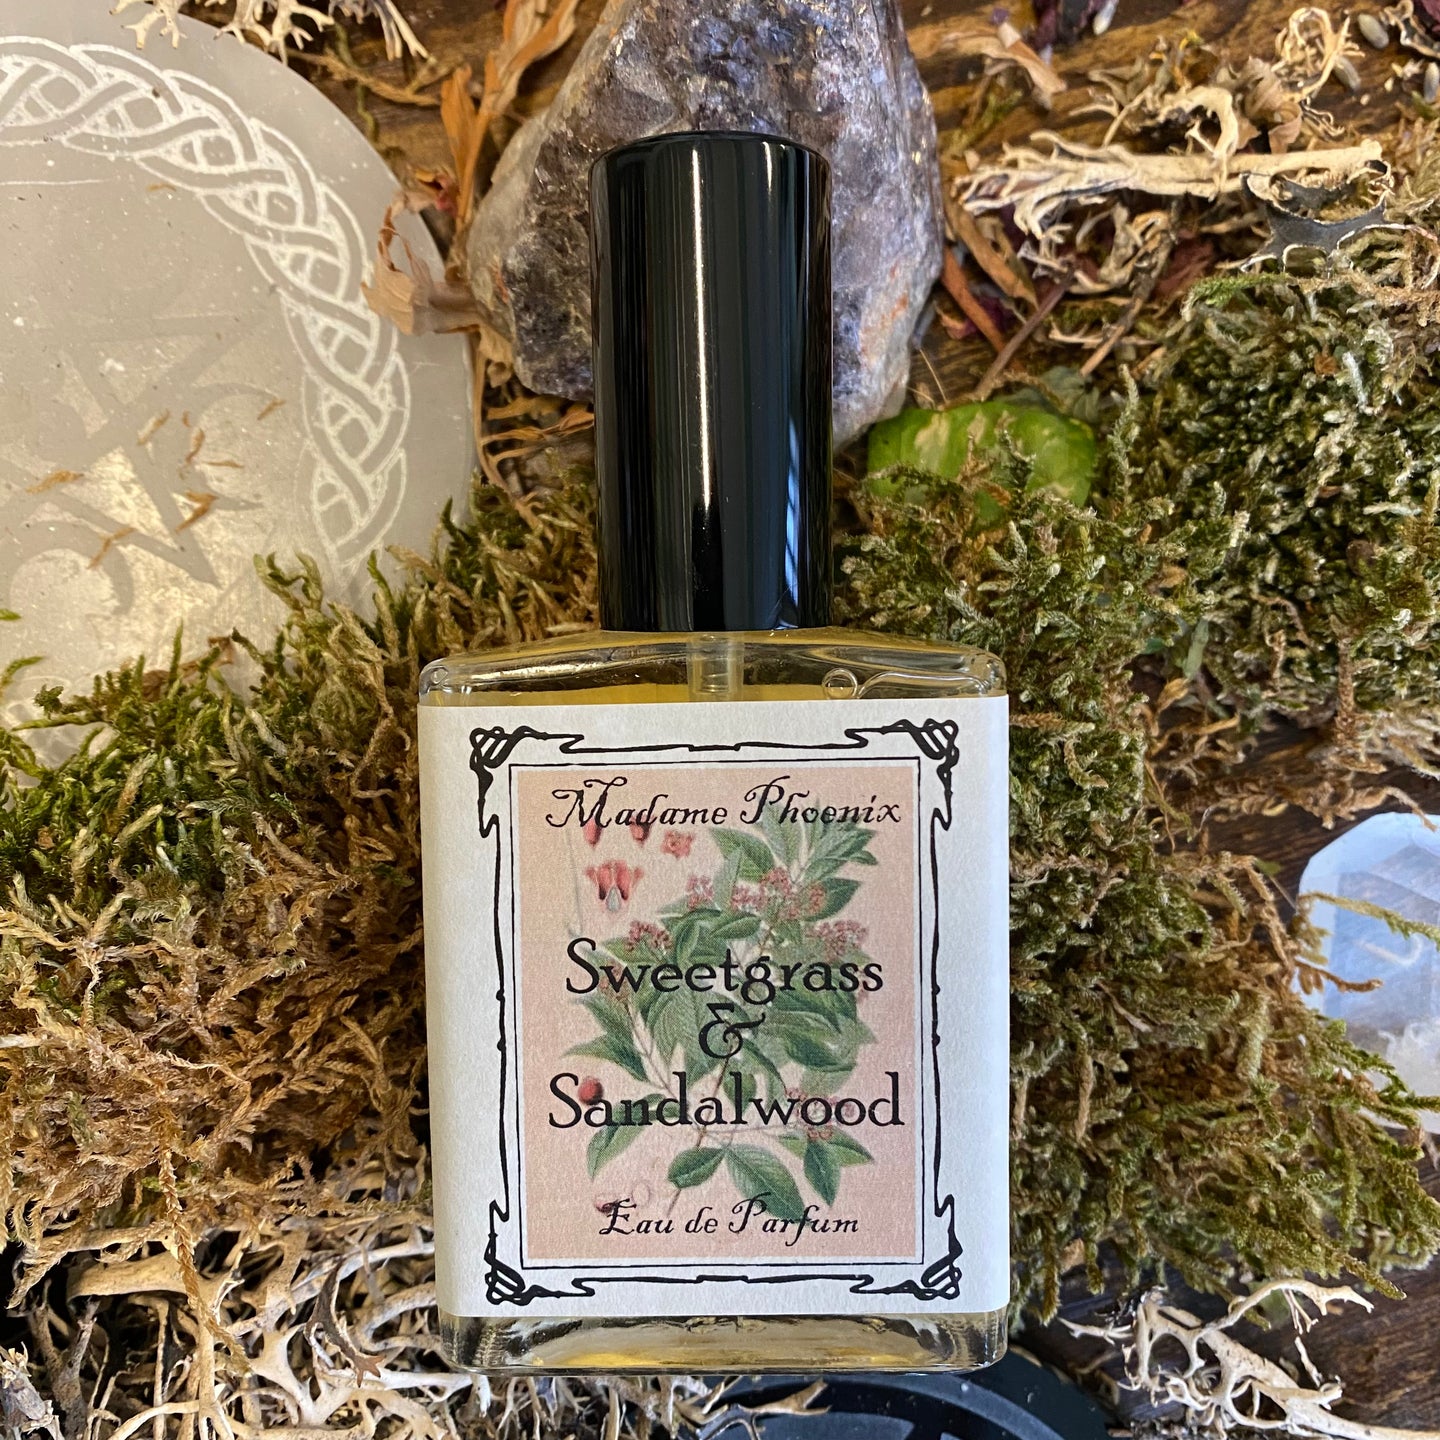 Sweetgrass & Sandalwood Eau de Perfume